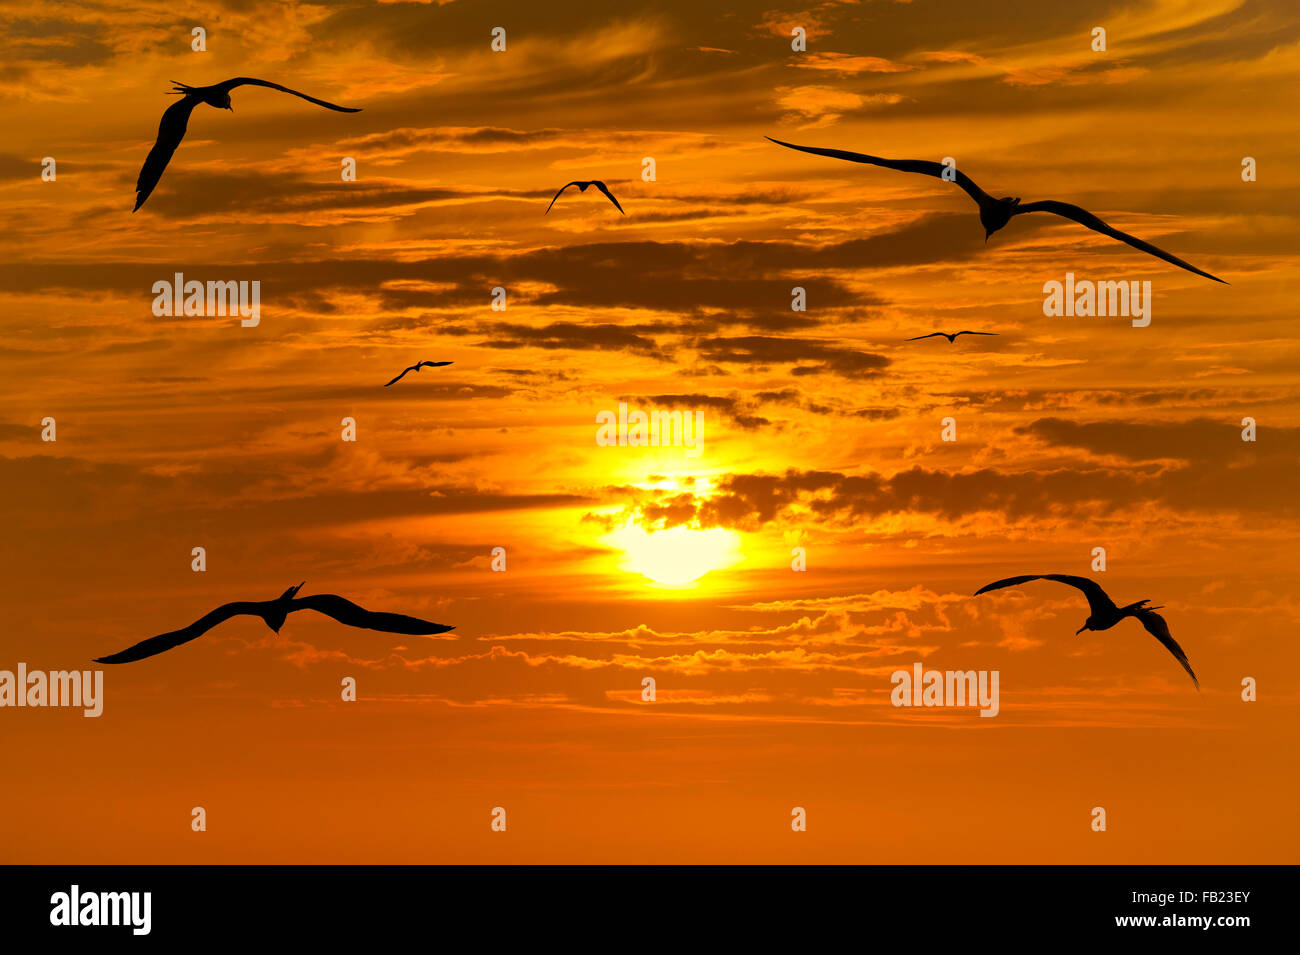 Gli uccelli silhouette è sette uccelli in un volo di libertà e di ispirazione verso una vibrante bright sun contro un bel colore arancione Foto Stock